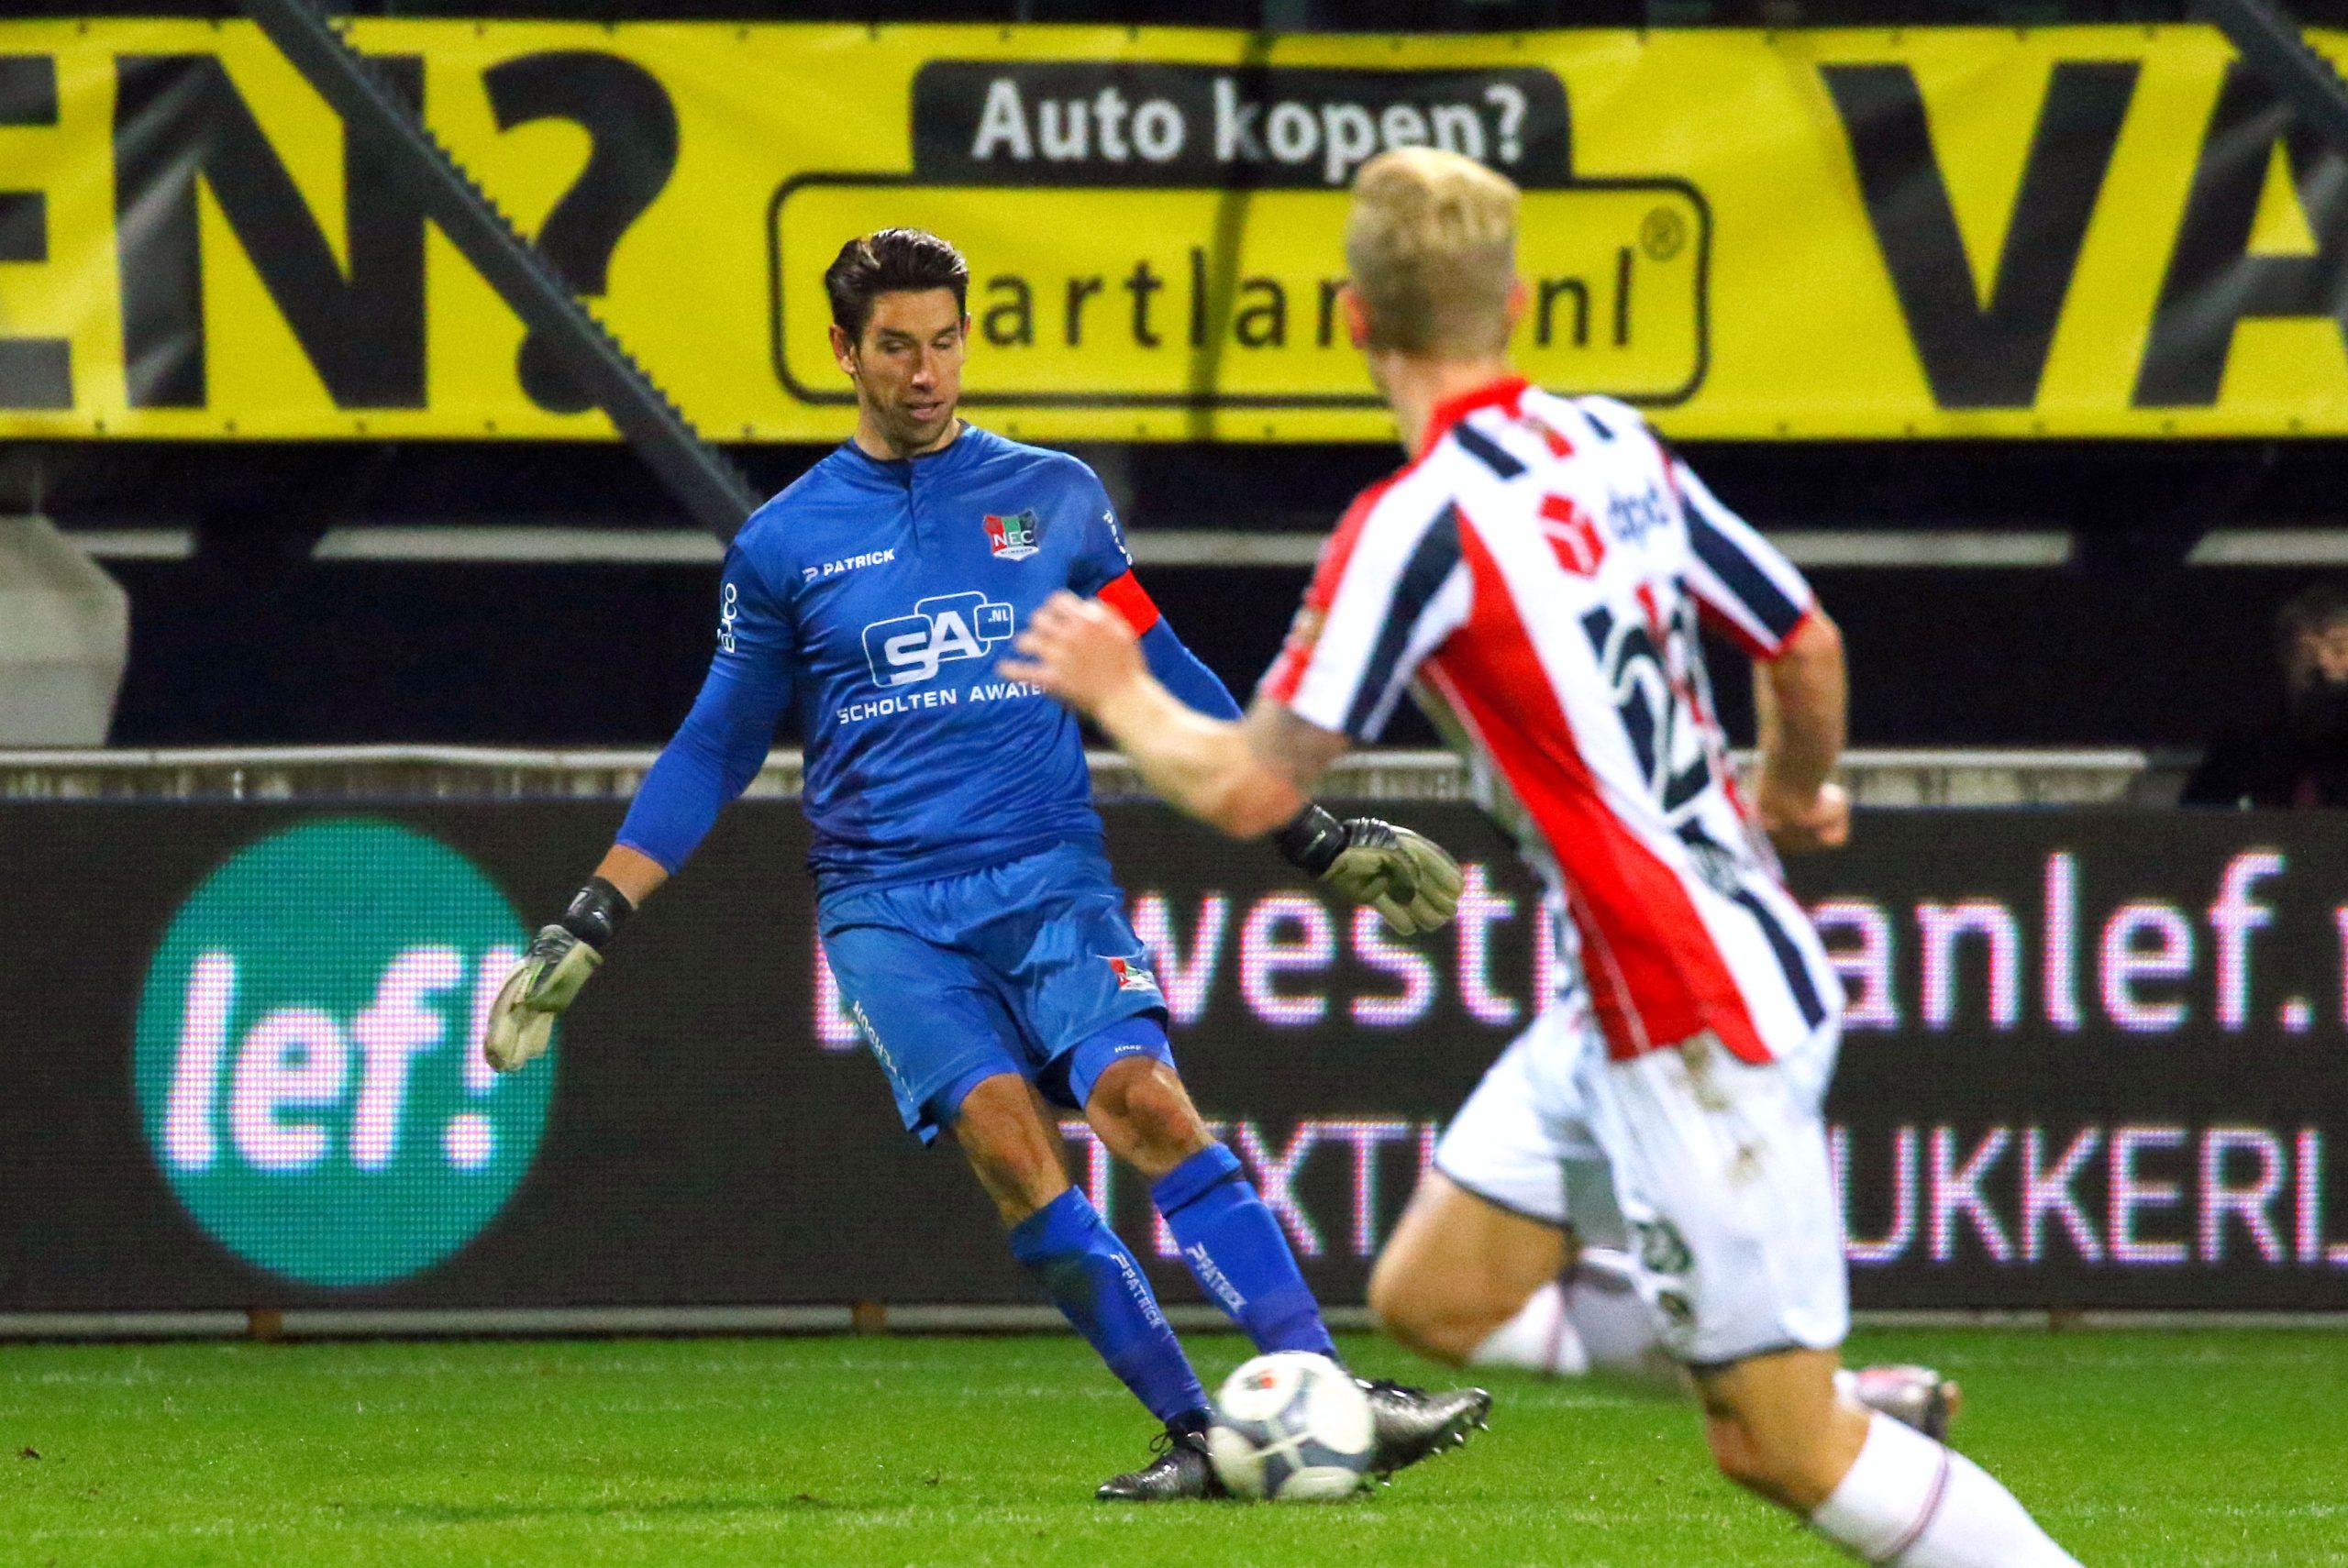 Jones is fan van de Eredivisie: “Competitie met potentie”